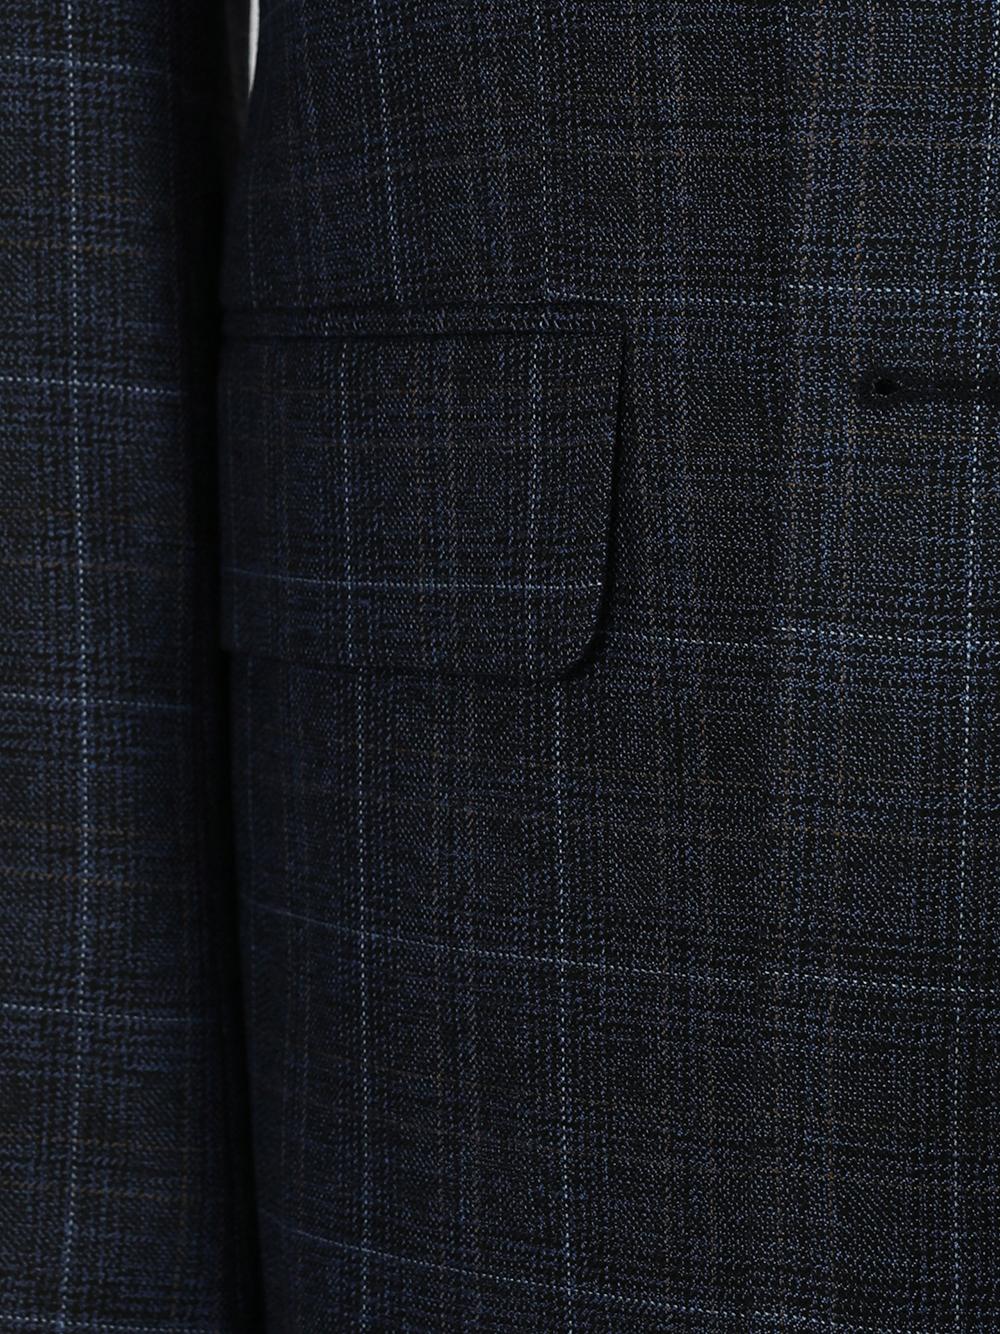 Harrison Blue Set Blazer Linen Suit